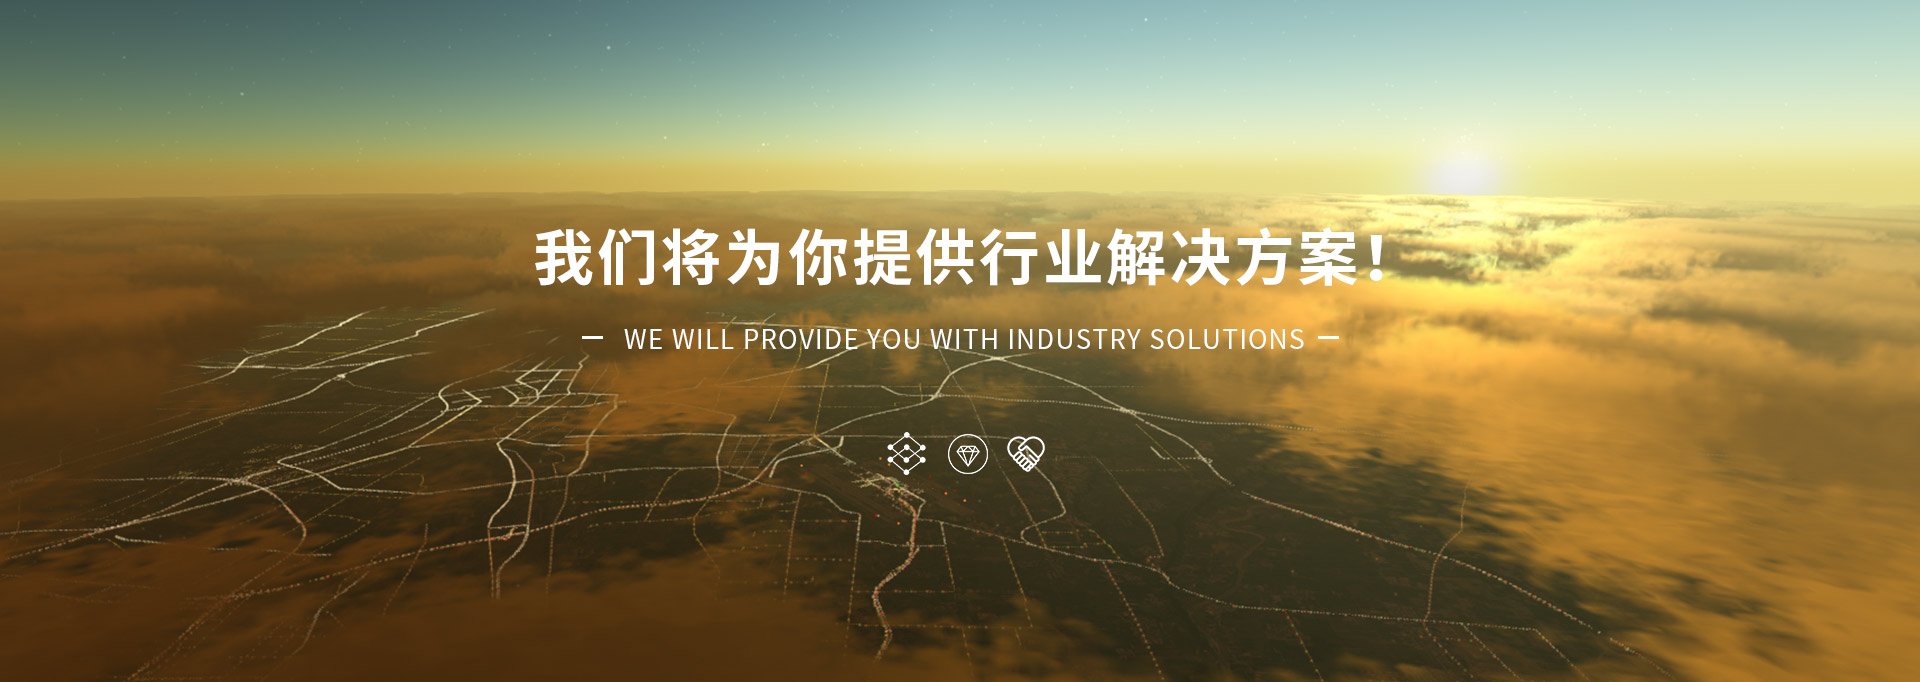 北京威视安业科技有限公司 